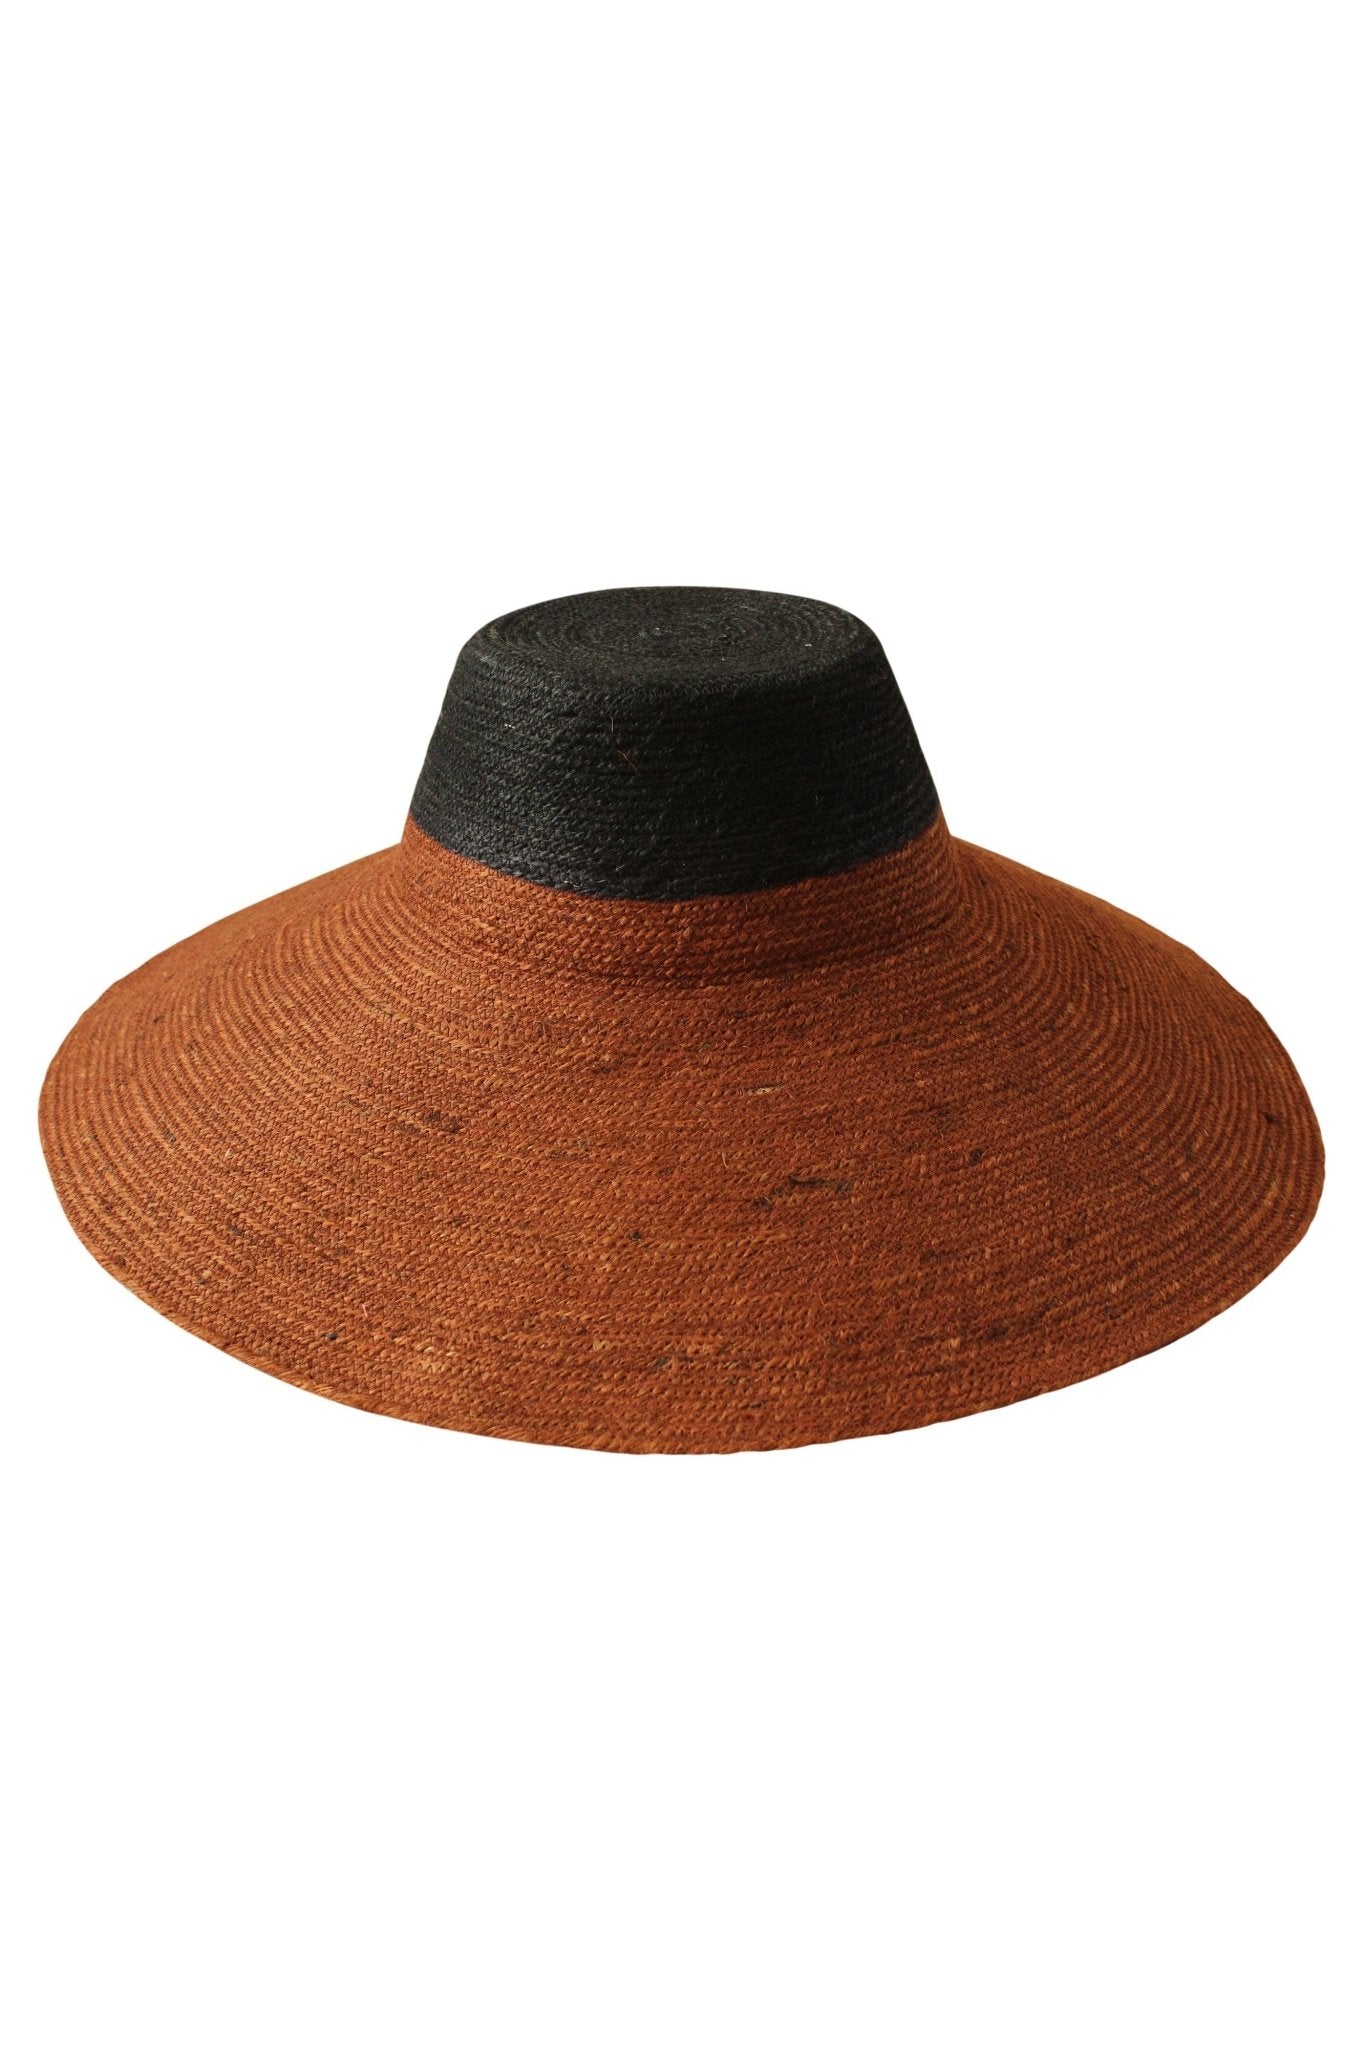 RIRI DUO Jute Straw Hat in Burnt Sienna & Black - Mack & Harvie